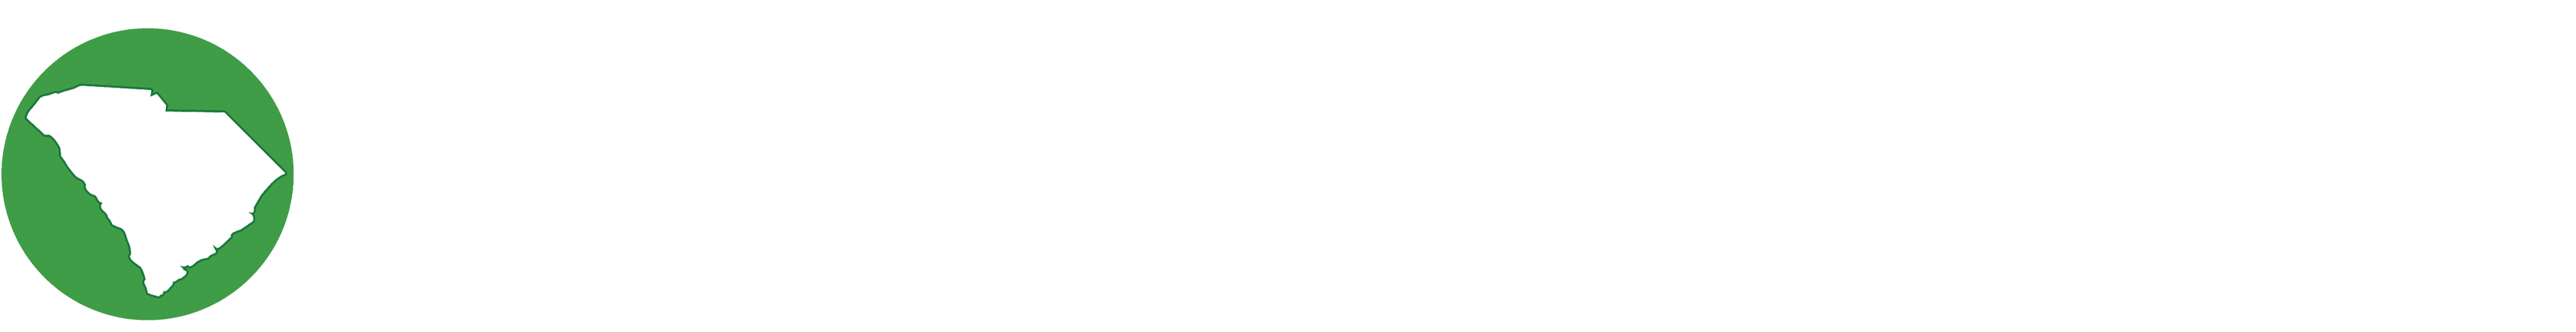 South Carolina Department of Revenue